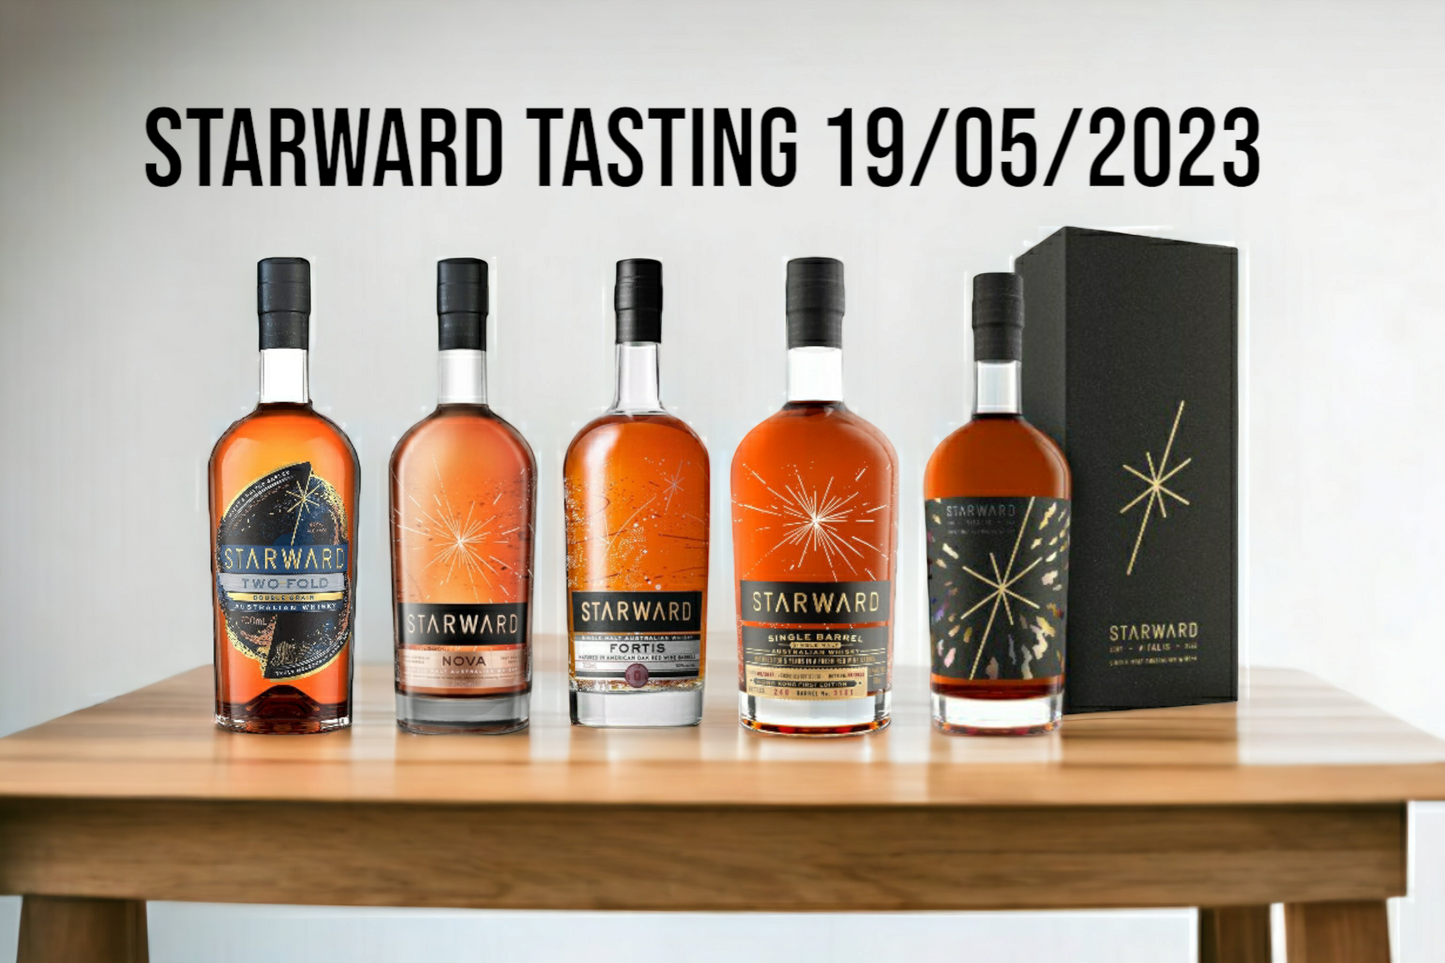 Starward 澳洲威士忌品飲會 19-05-2023 whisky Starward whisky tasting